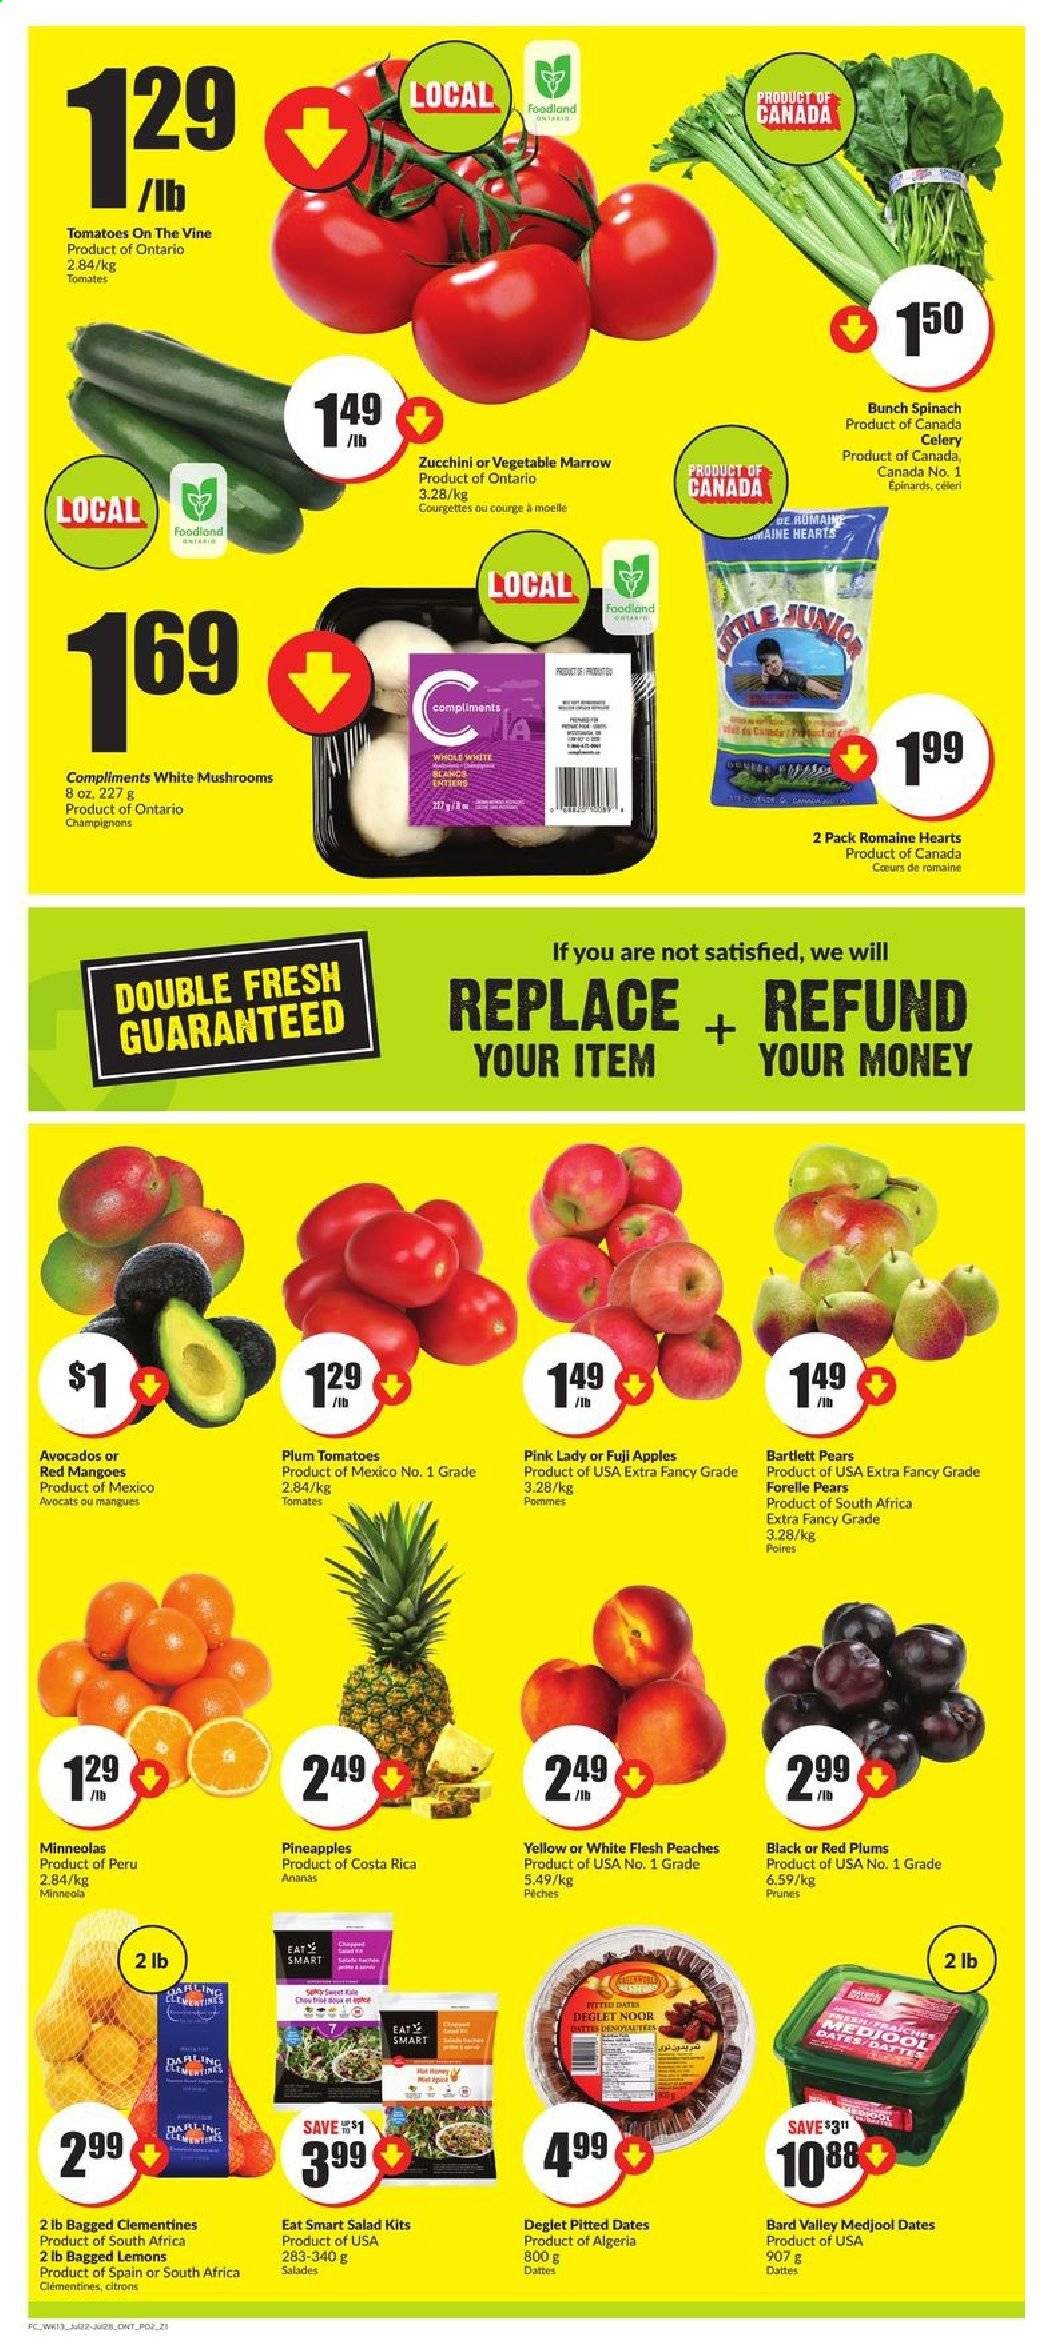 thumbnail - Circulaire FreshCo. - 22 Juillet 2021 - 28 Juillet 2021 - Produits soldés - tomates, pommes, citron, poire, pêche, datte, ananas, céleri, courge, courgette, épinard, clémentines. Page 2.